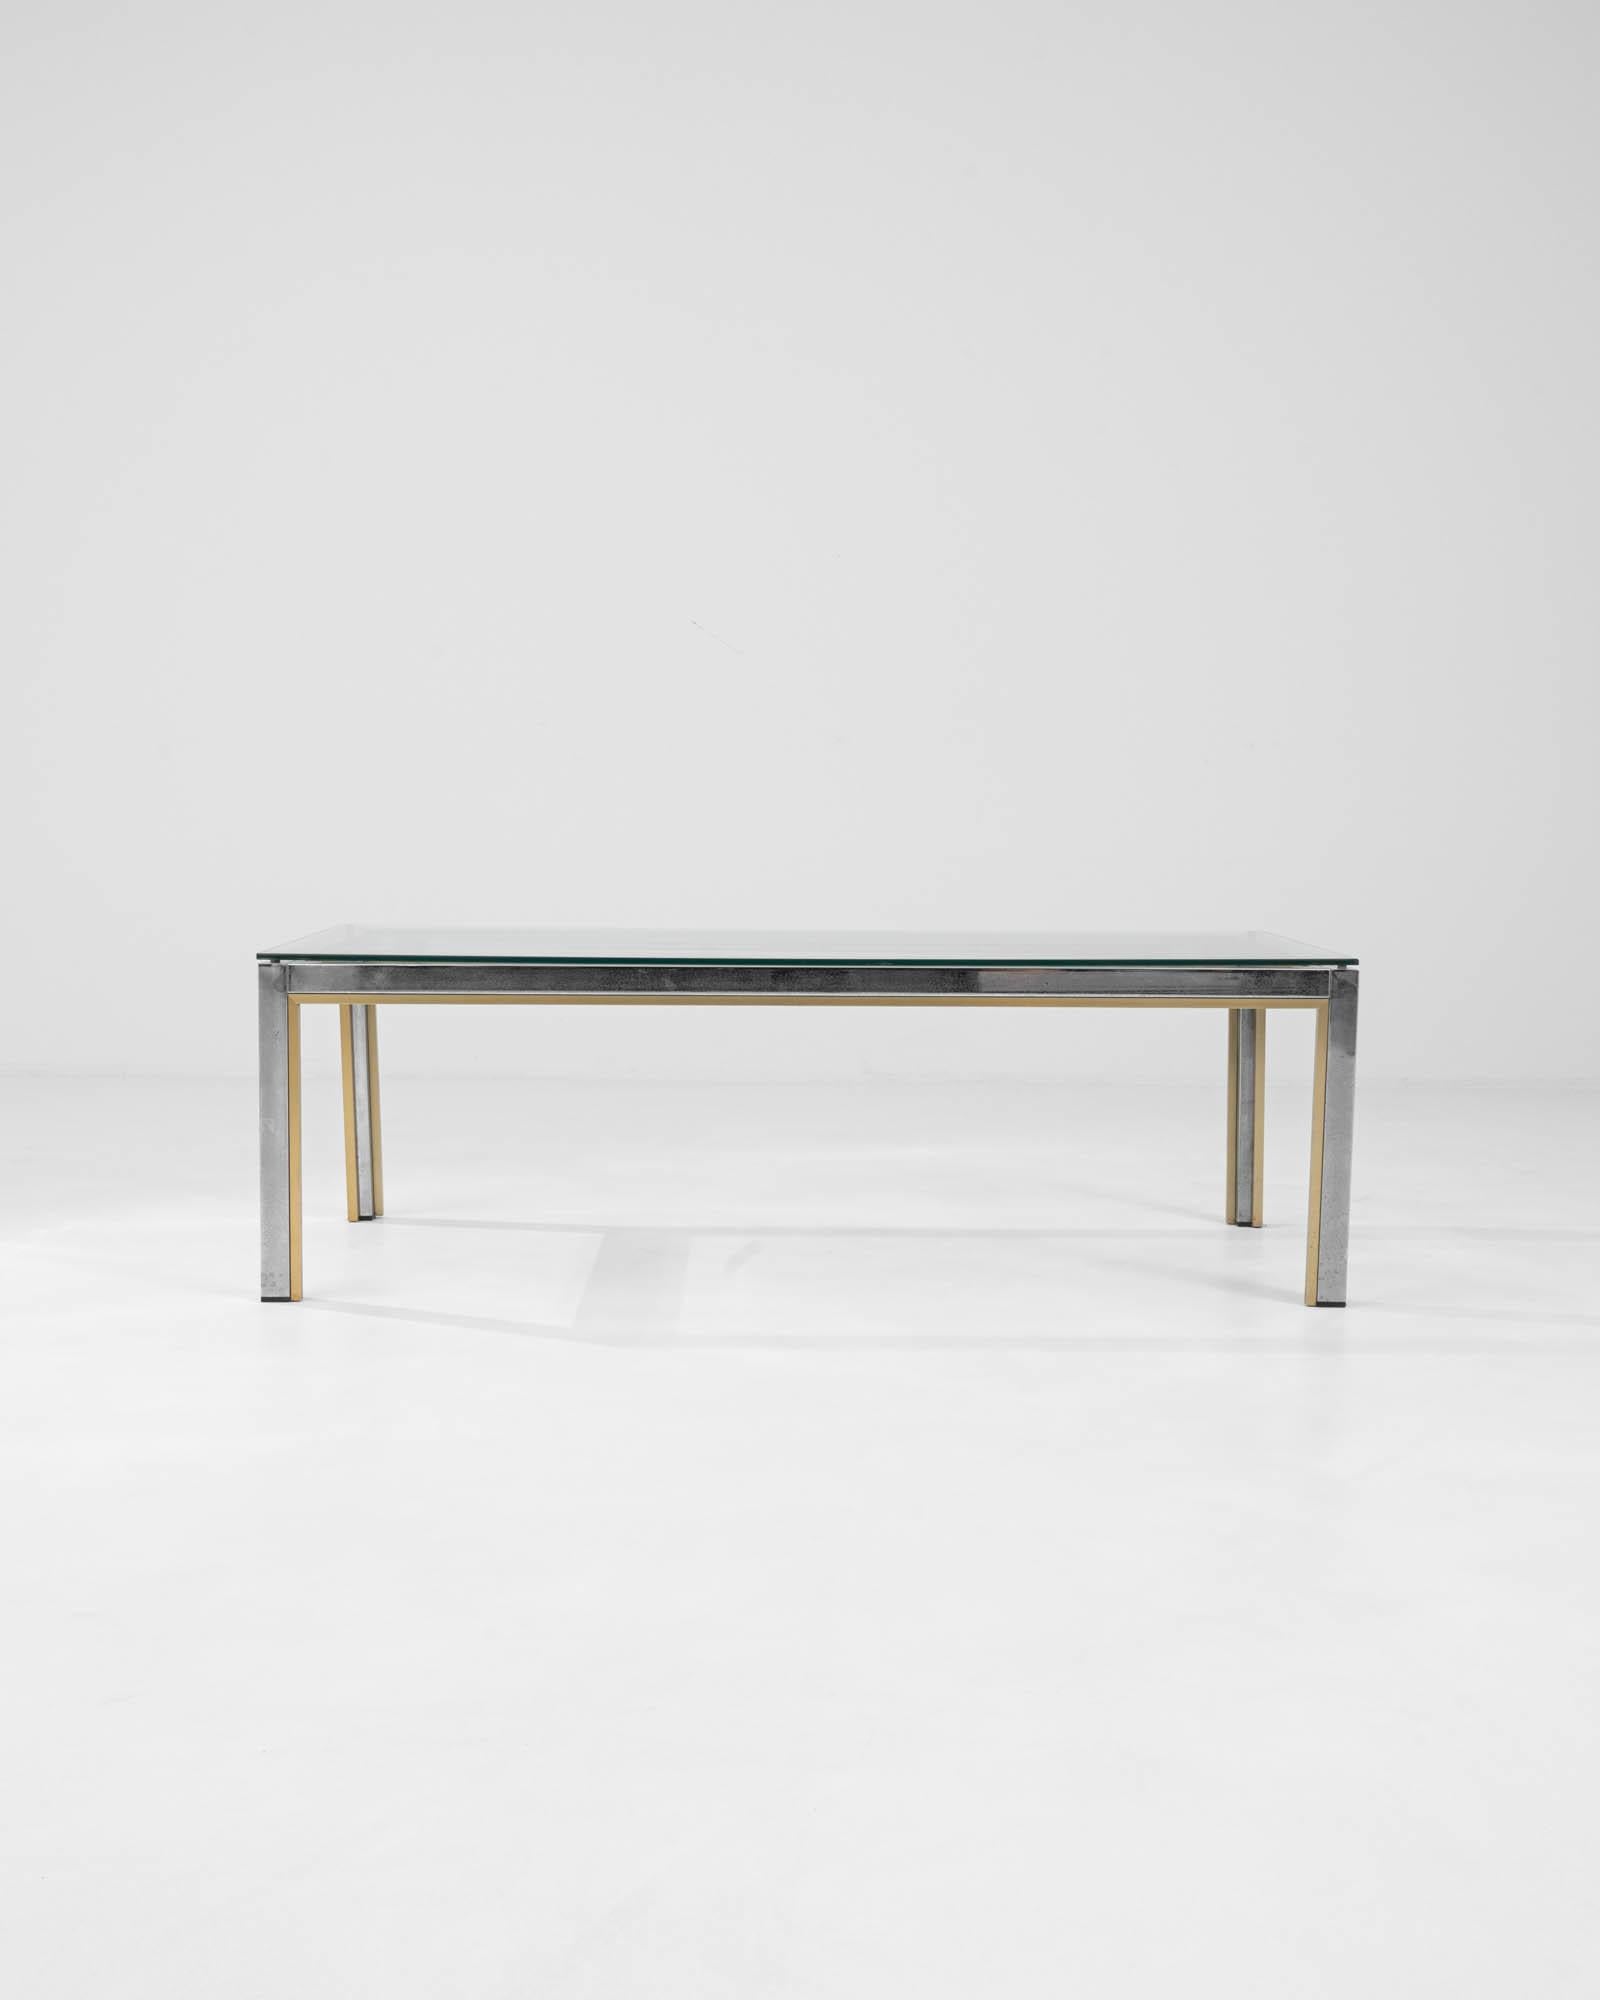 Cette exquise table basse italienne en laiton du XXe siècle, signée Renato Zevi, est un chef-d'œuvre du design moderne du milieu du siècle. Les lignes épurées et minimalistes de la table sont accentuées par l'éclat subtil du laiton, offrant une